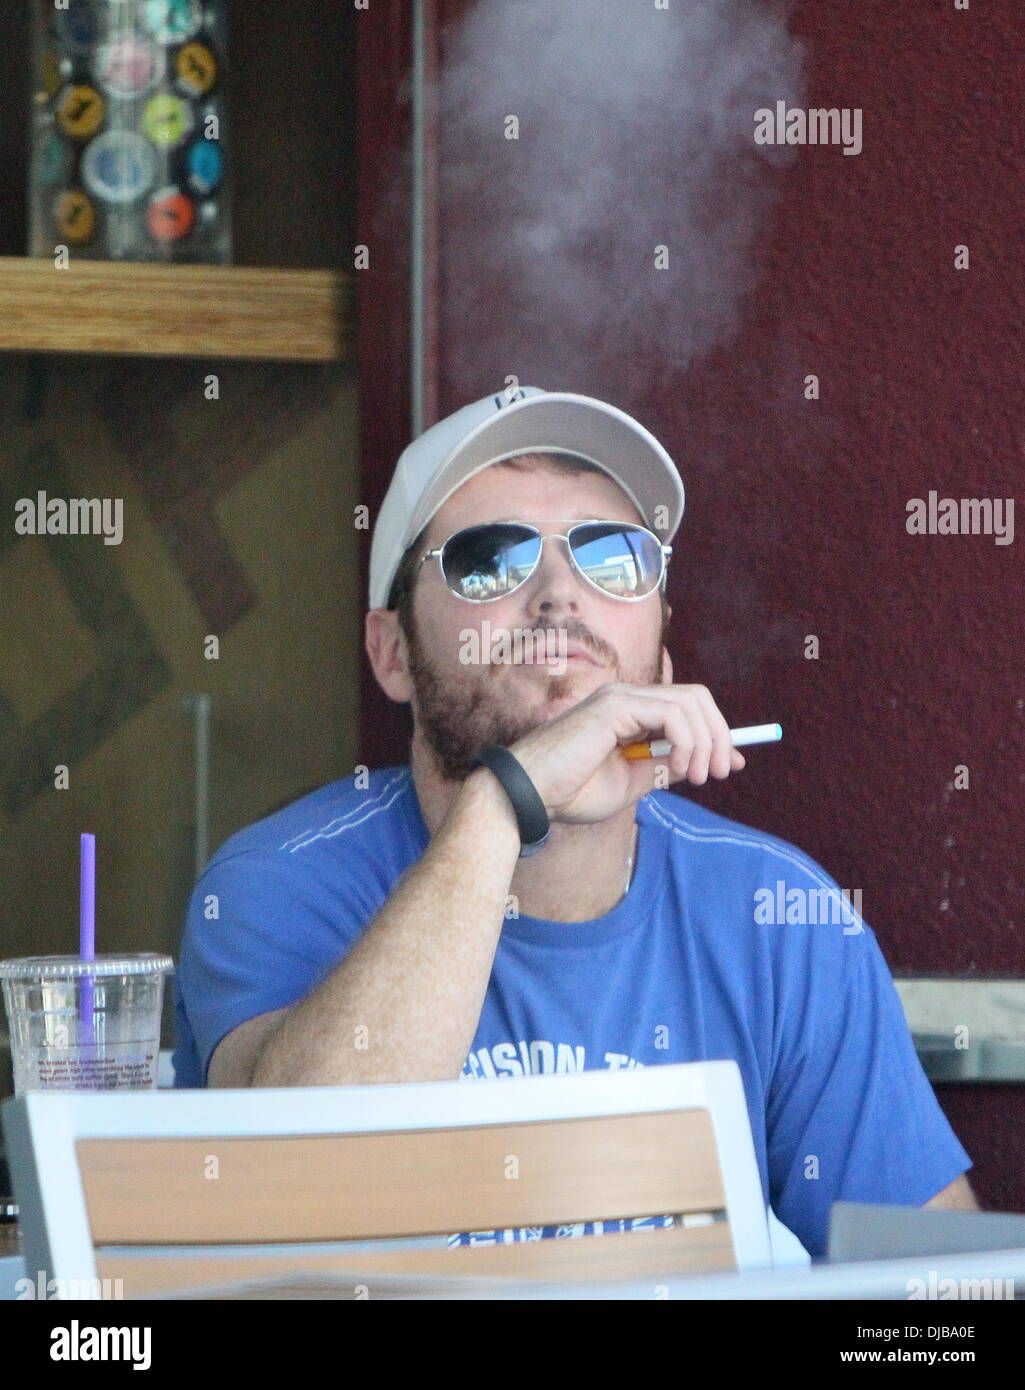 Kevin Connolly røyker sigarett (eller hasj)
